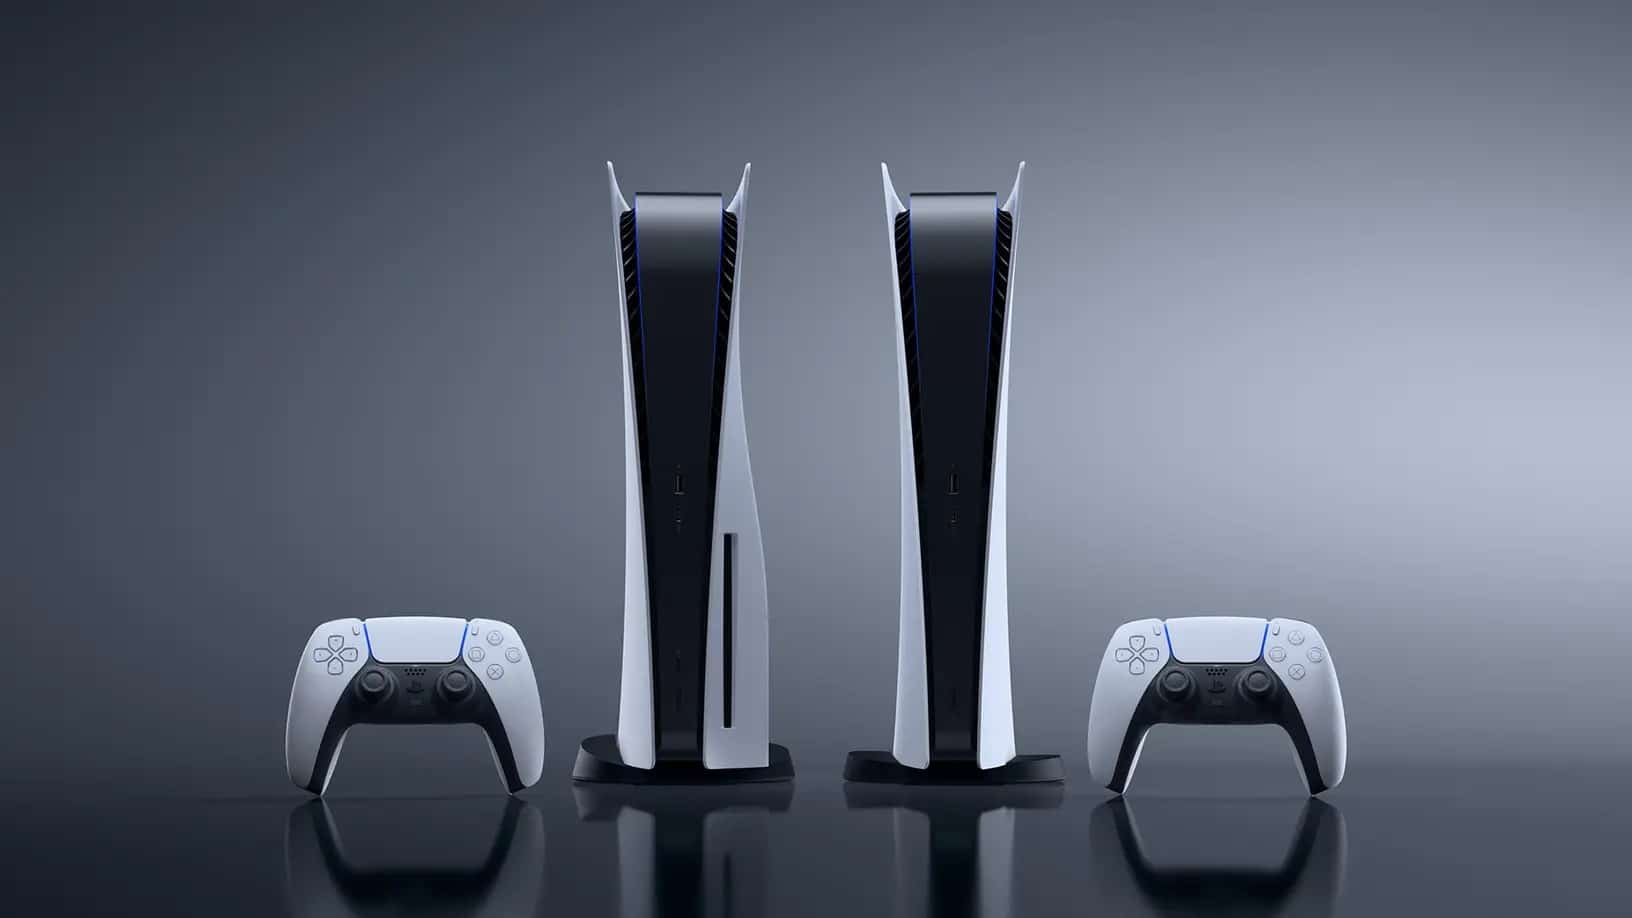 Black Friday dá desconto de 20% à PS5: a consola da Sony vai ter o preço  mais baixo de sempre